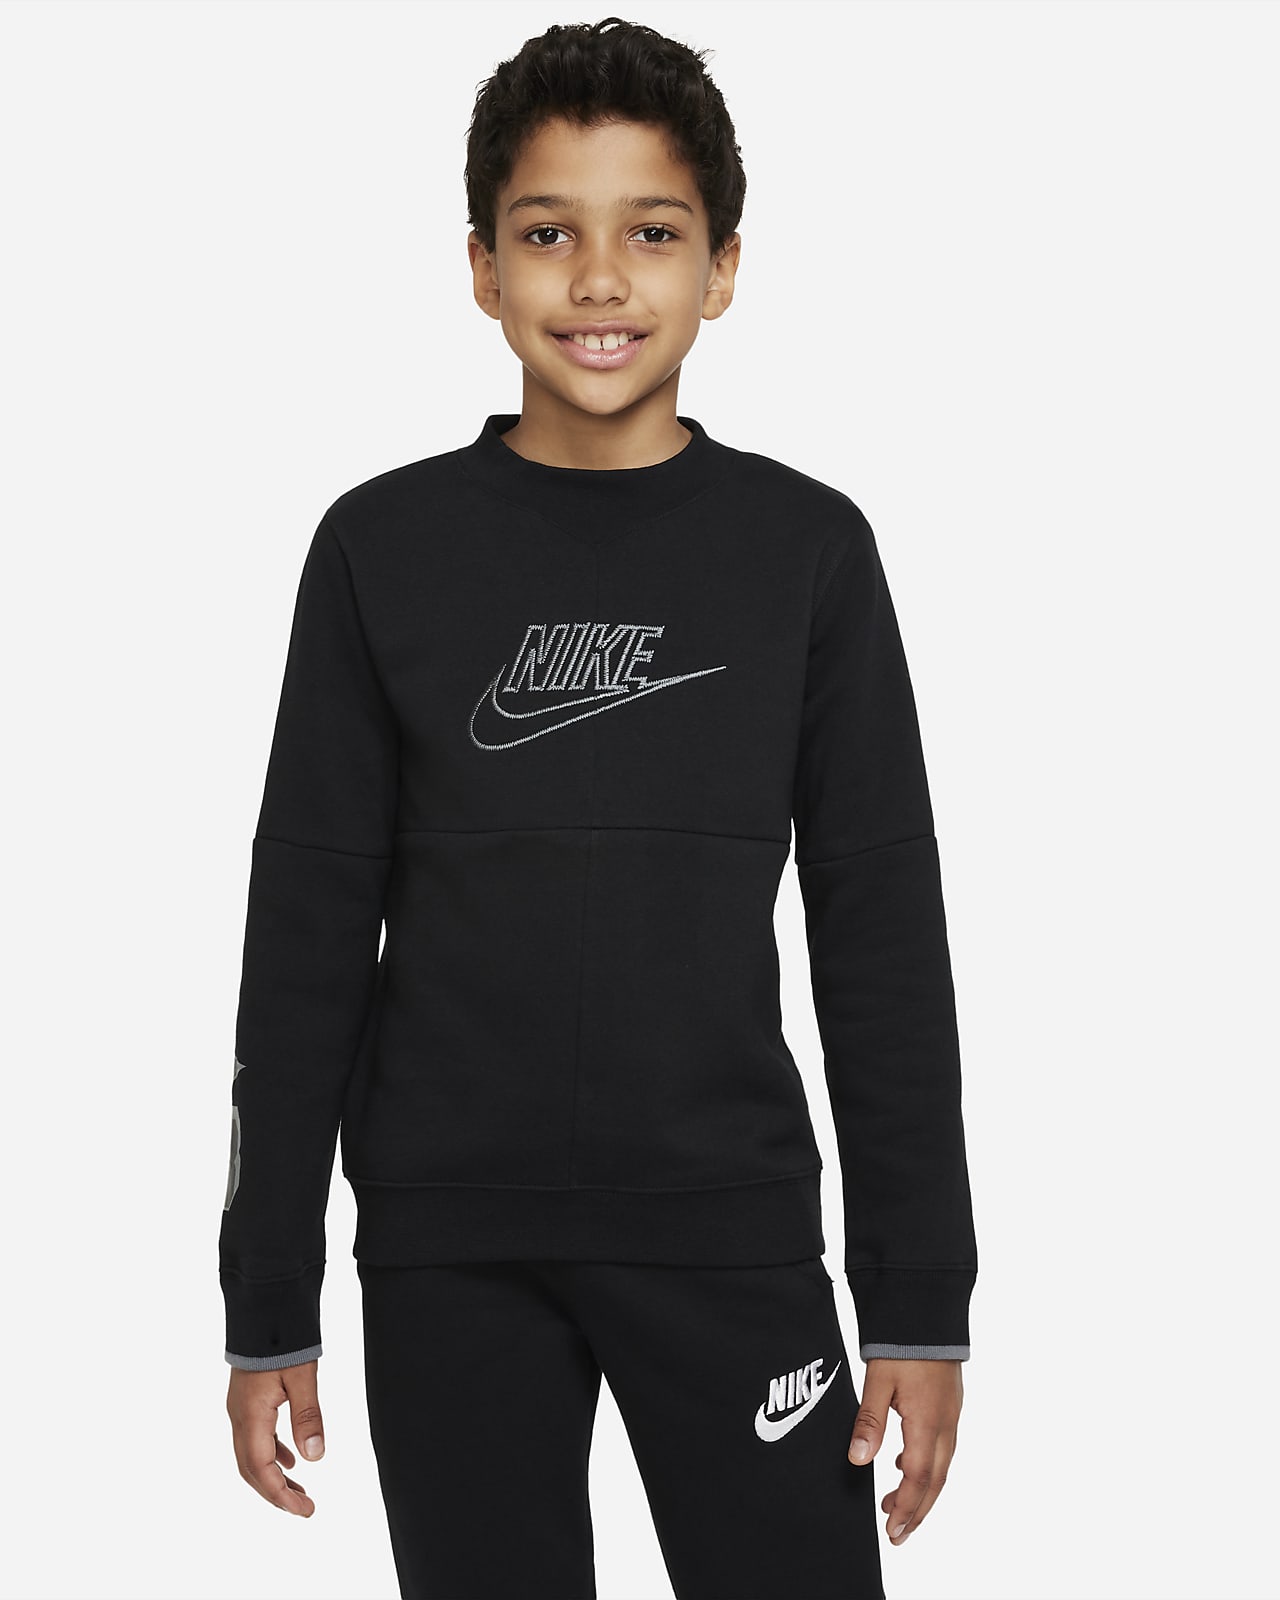 Nike Sportswear Big Kids' (Boys') Amplify Sweatshirt